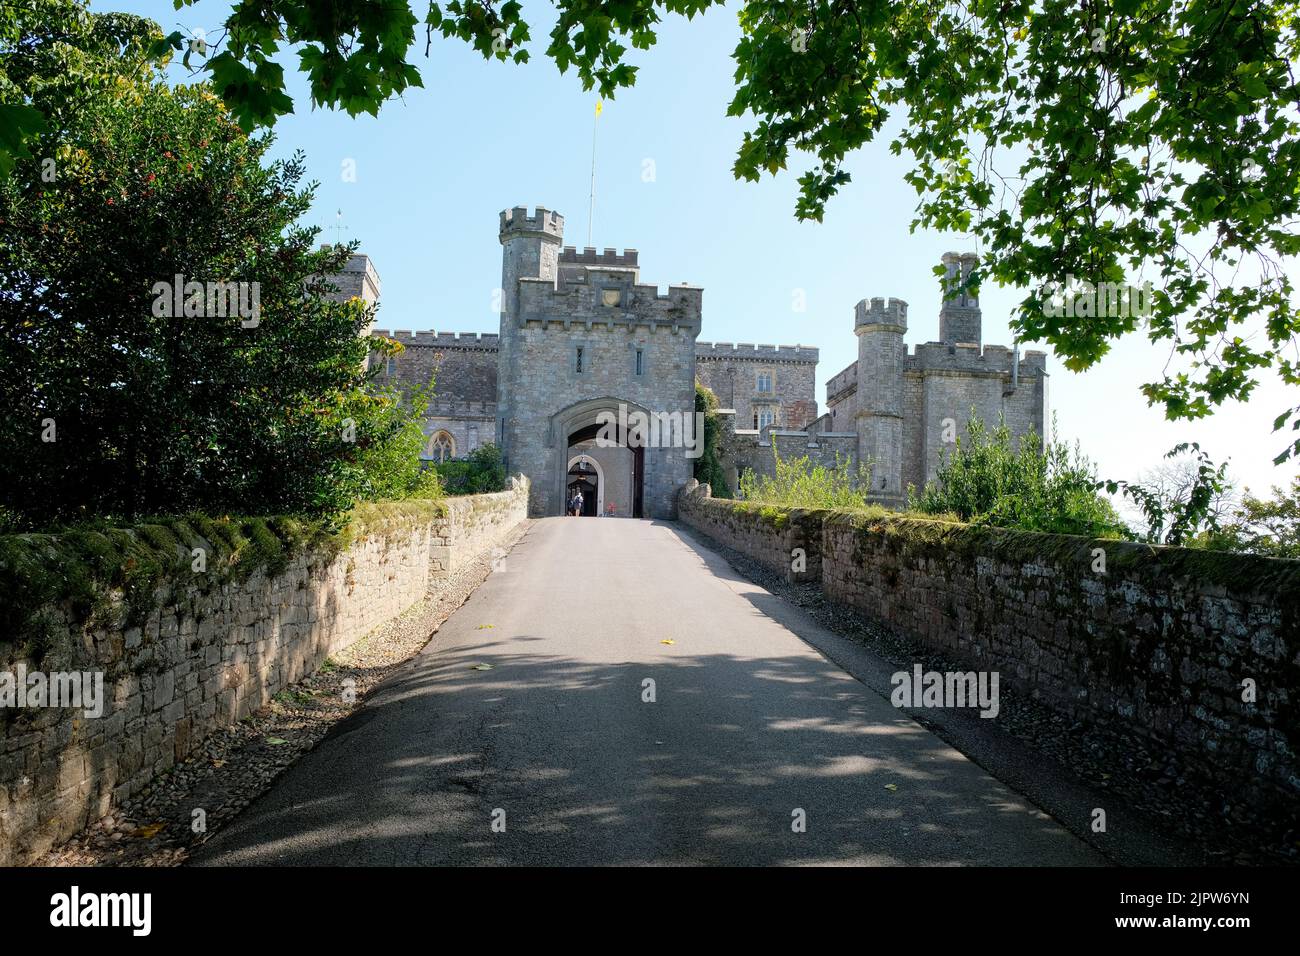 Le château de Powderham est un manoir fortifié situé près d'Exminster, Devon Banque D'Images